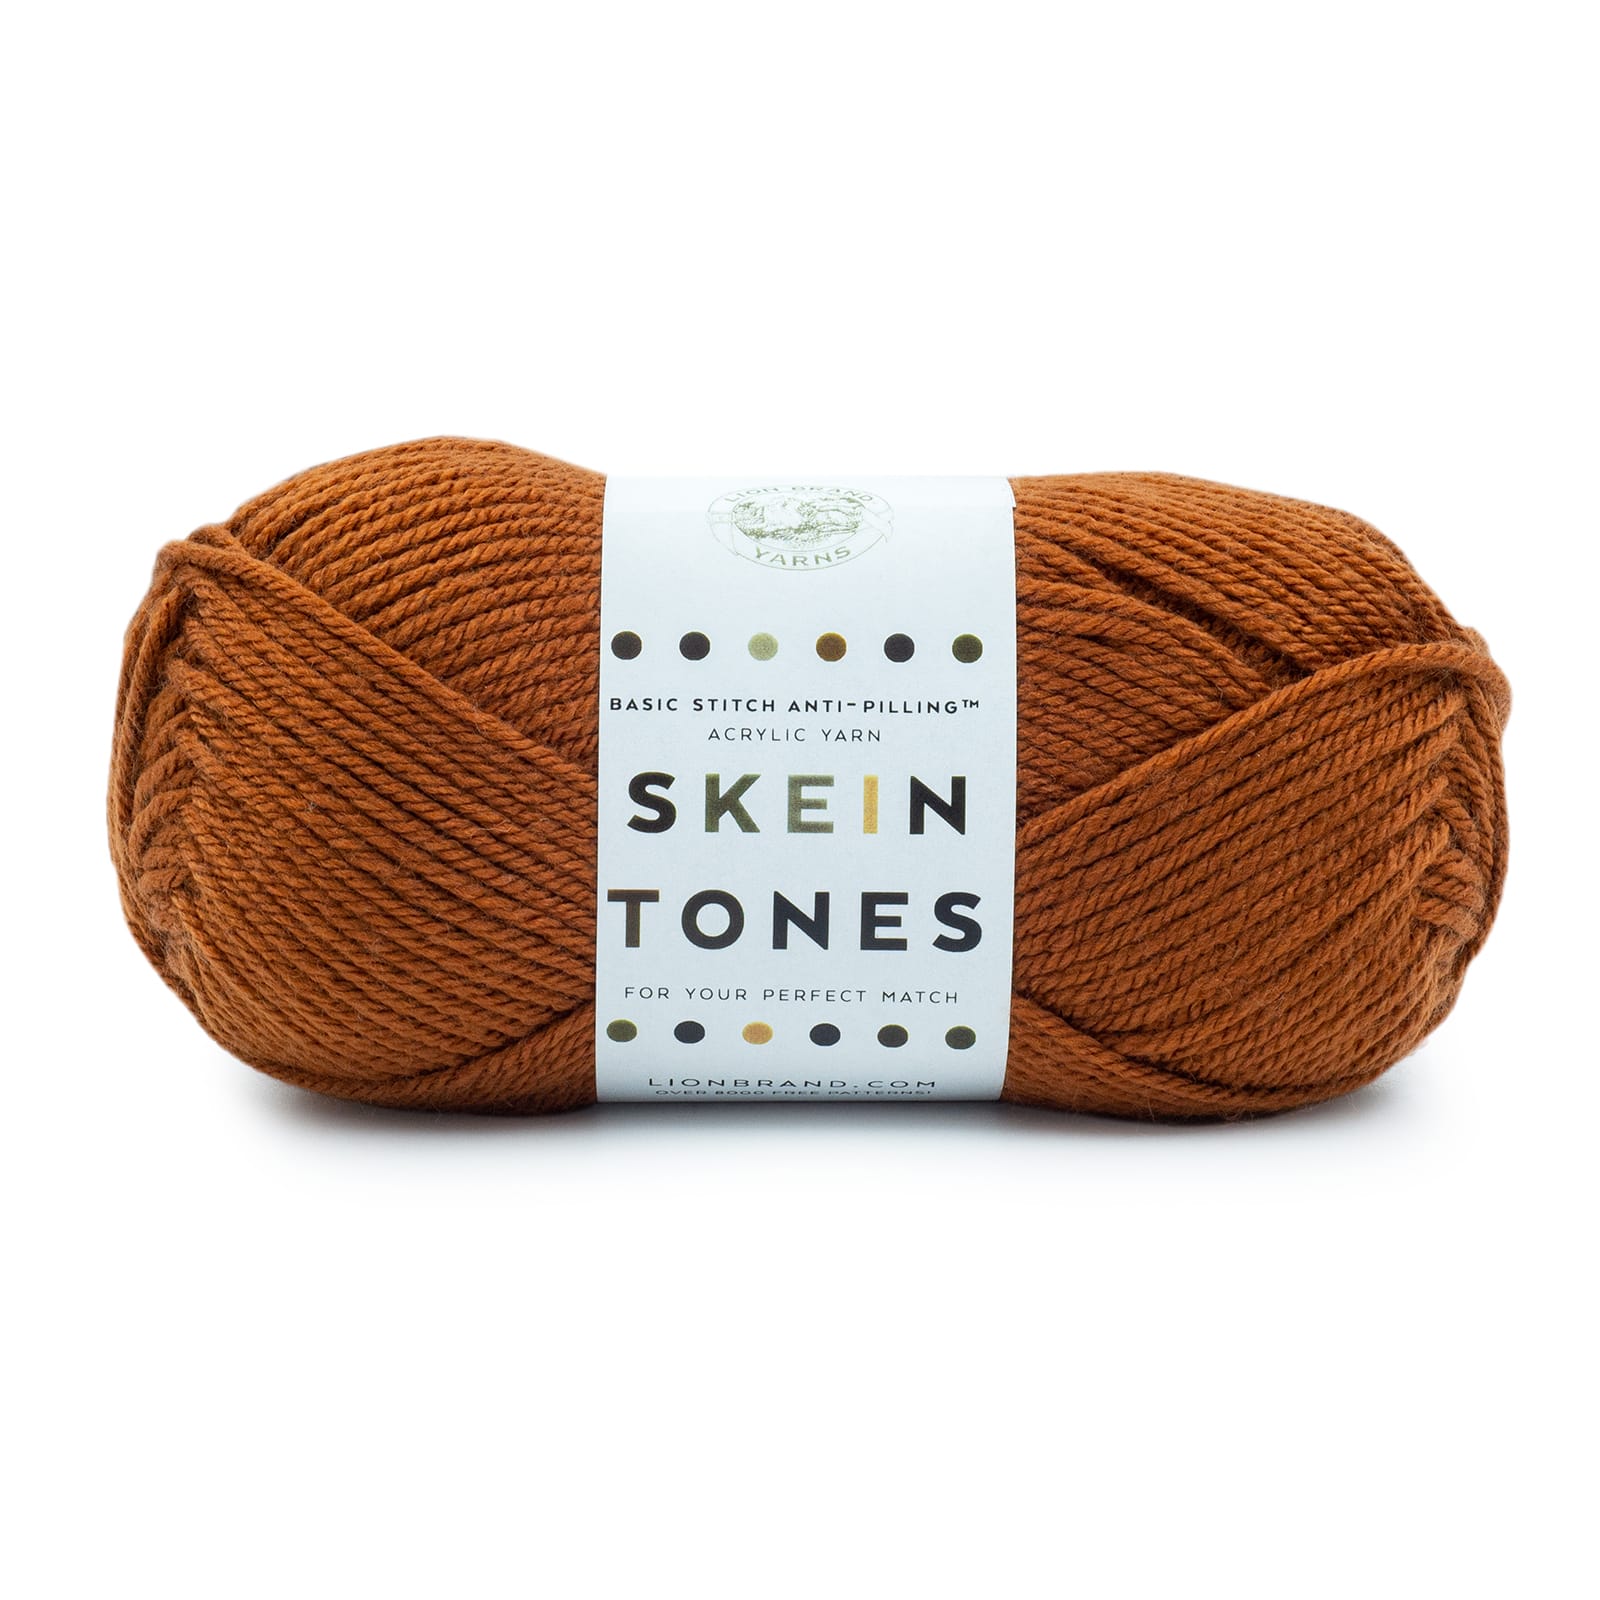 Skein Tone Yarn from Lion Brand